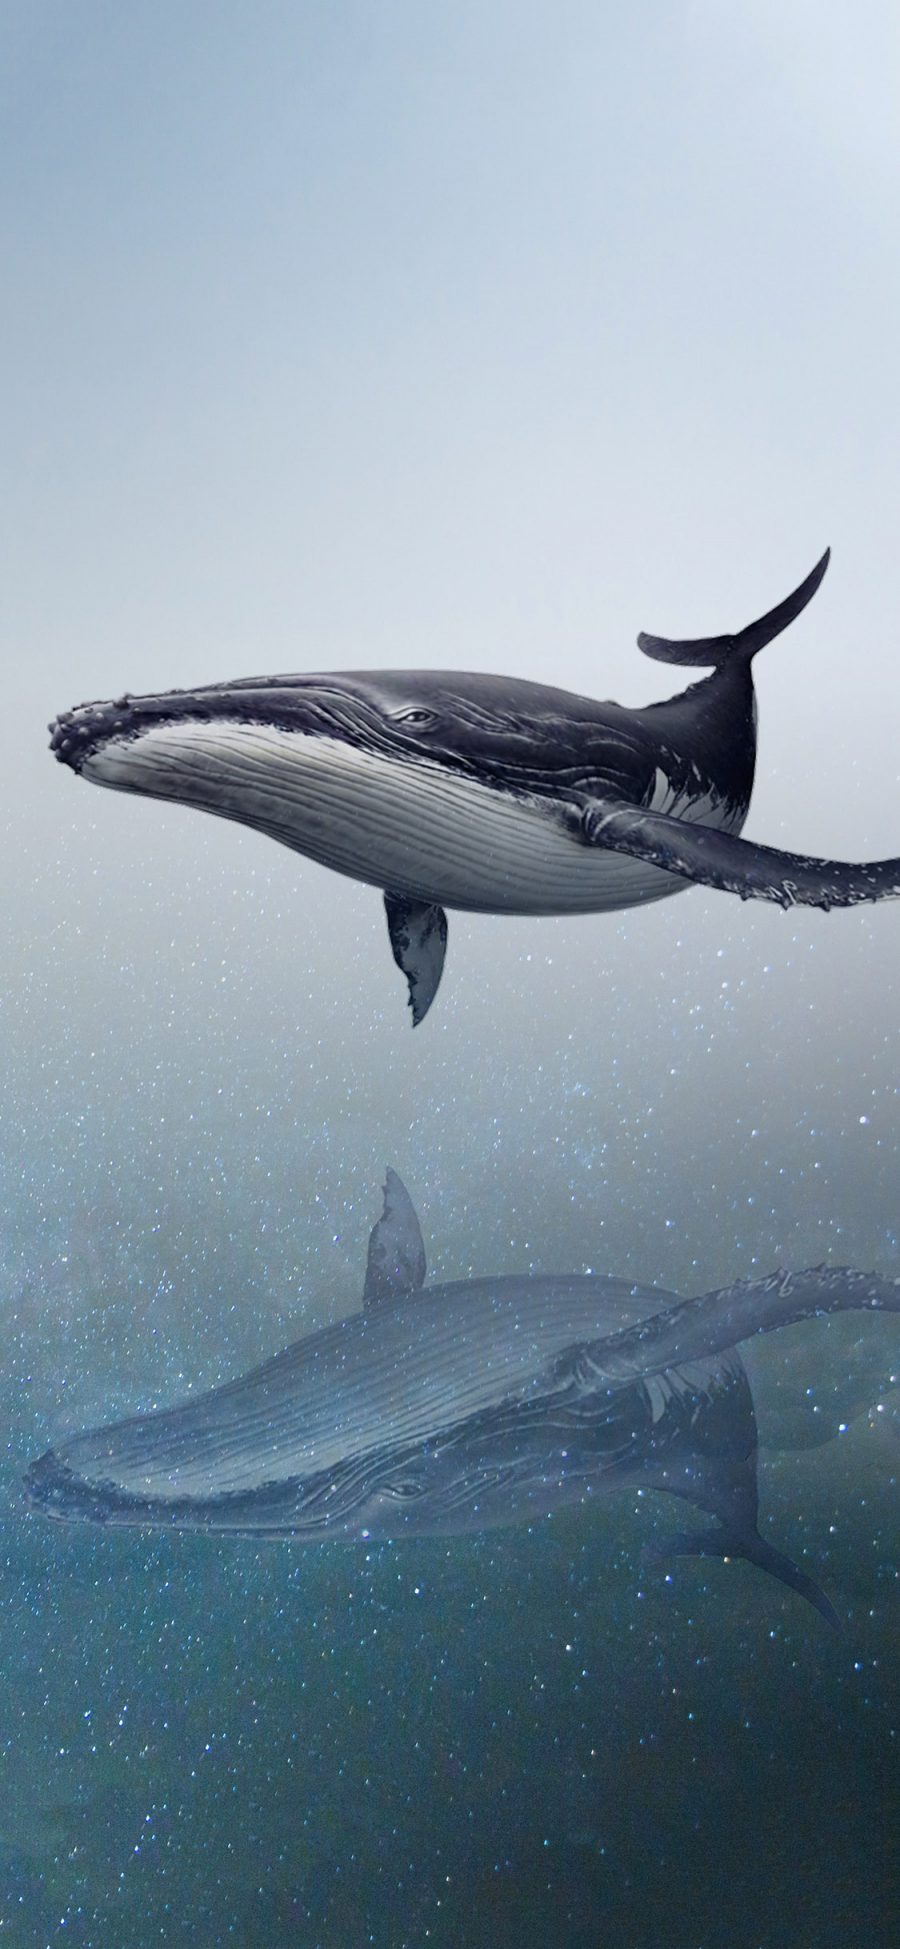 [2436×1125]鲸 海洋生物 游动 对称 唯美 大海 梦境 苹果手机壁纸图片